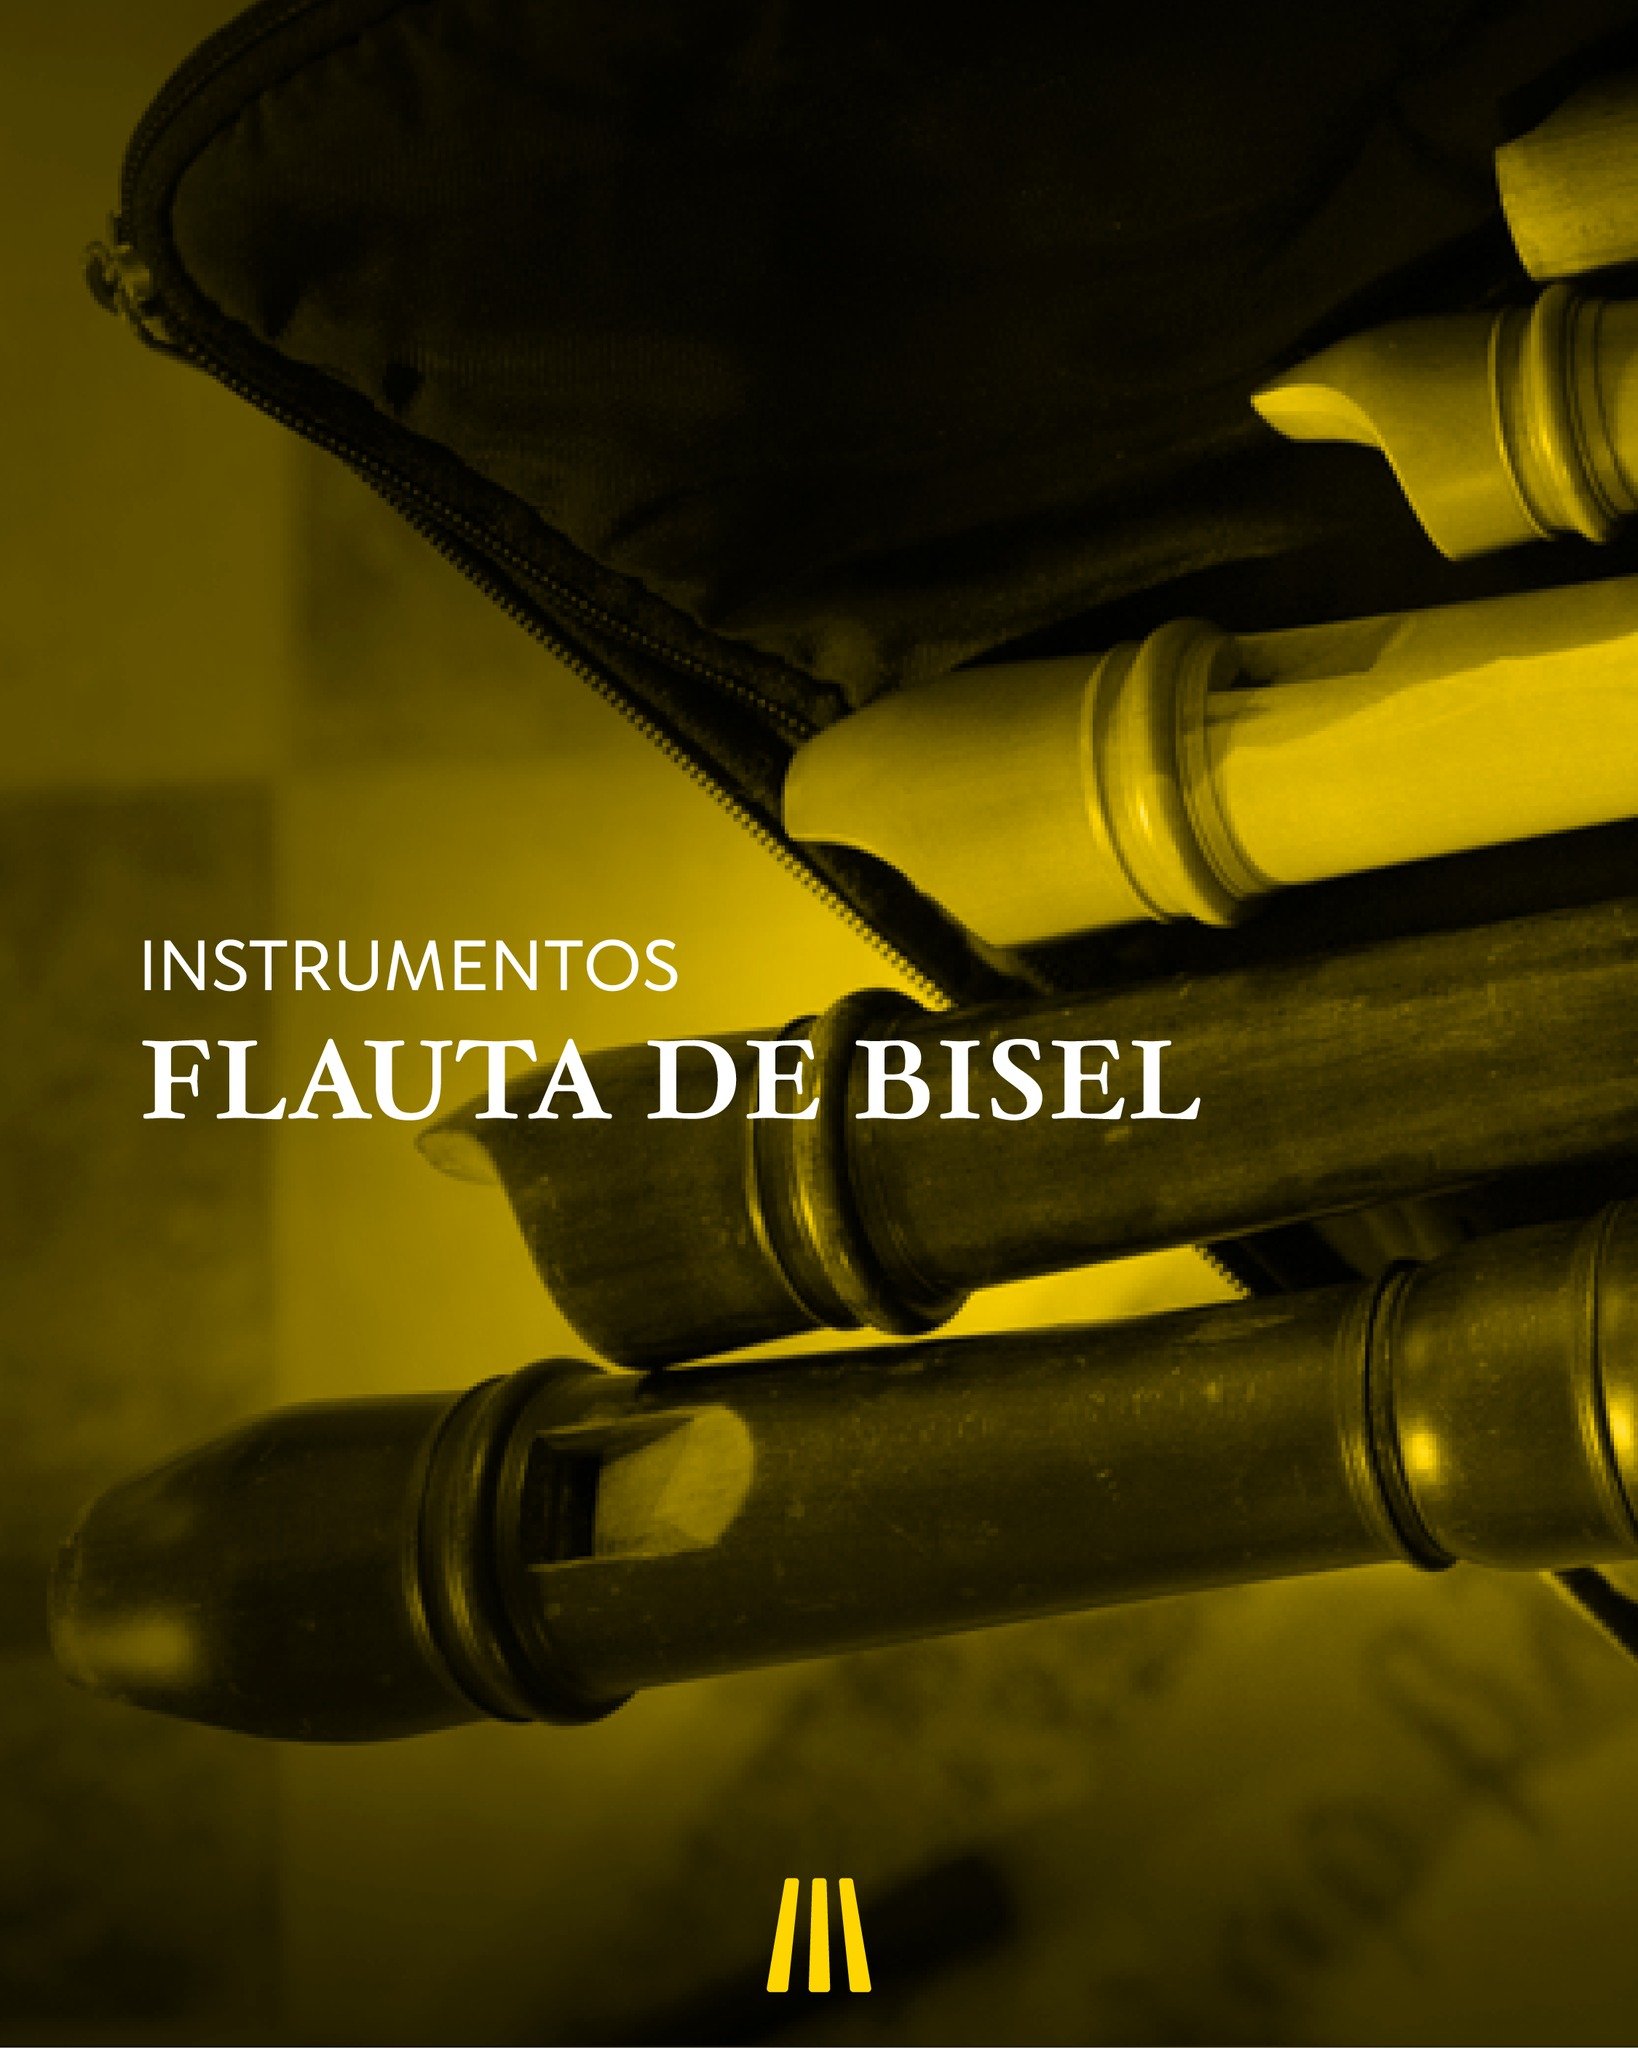 Instrumentos | Flauta de Bisel

#melleoharmonia #flautabisel #instrumentos #musicaclassica